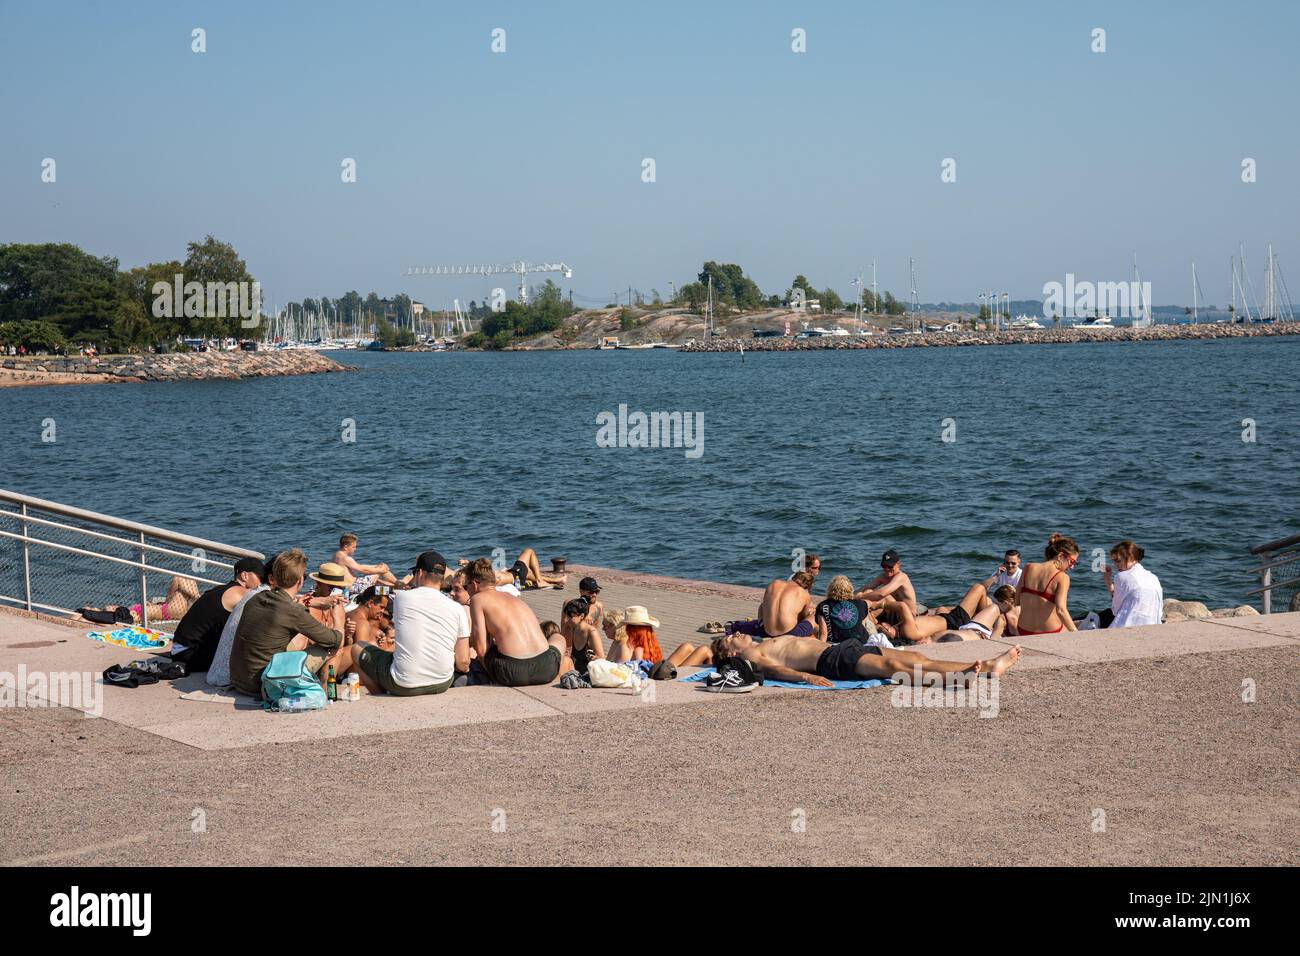 Jóvenes que pasan el rato en el puerto durante un caluroso día de verano en el distrito de Eira de Helsinki, Finlandia Foto de stock